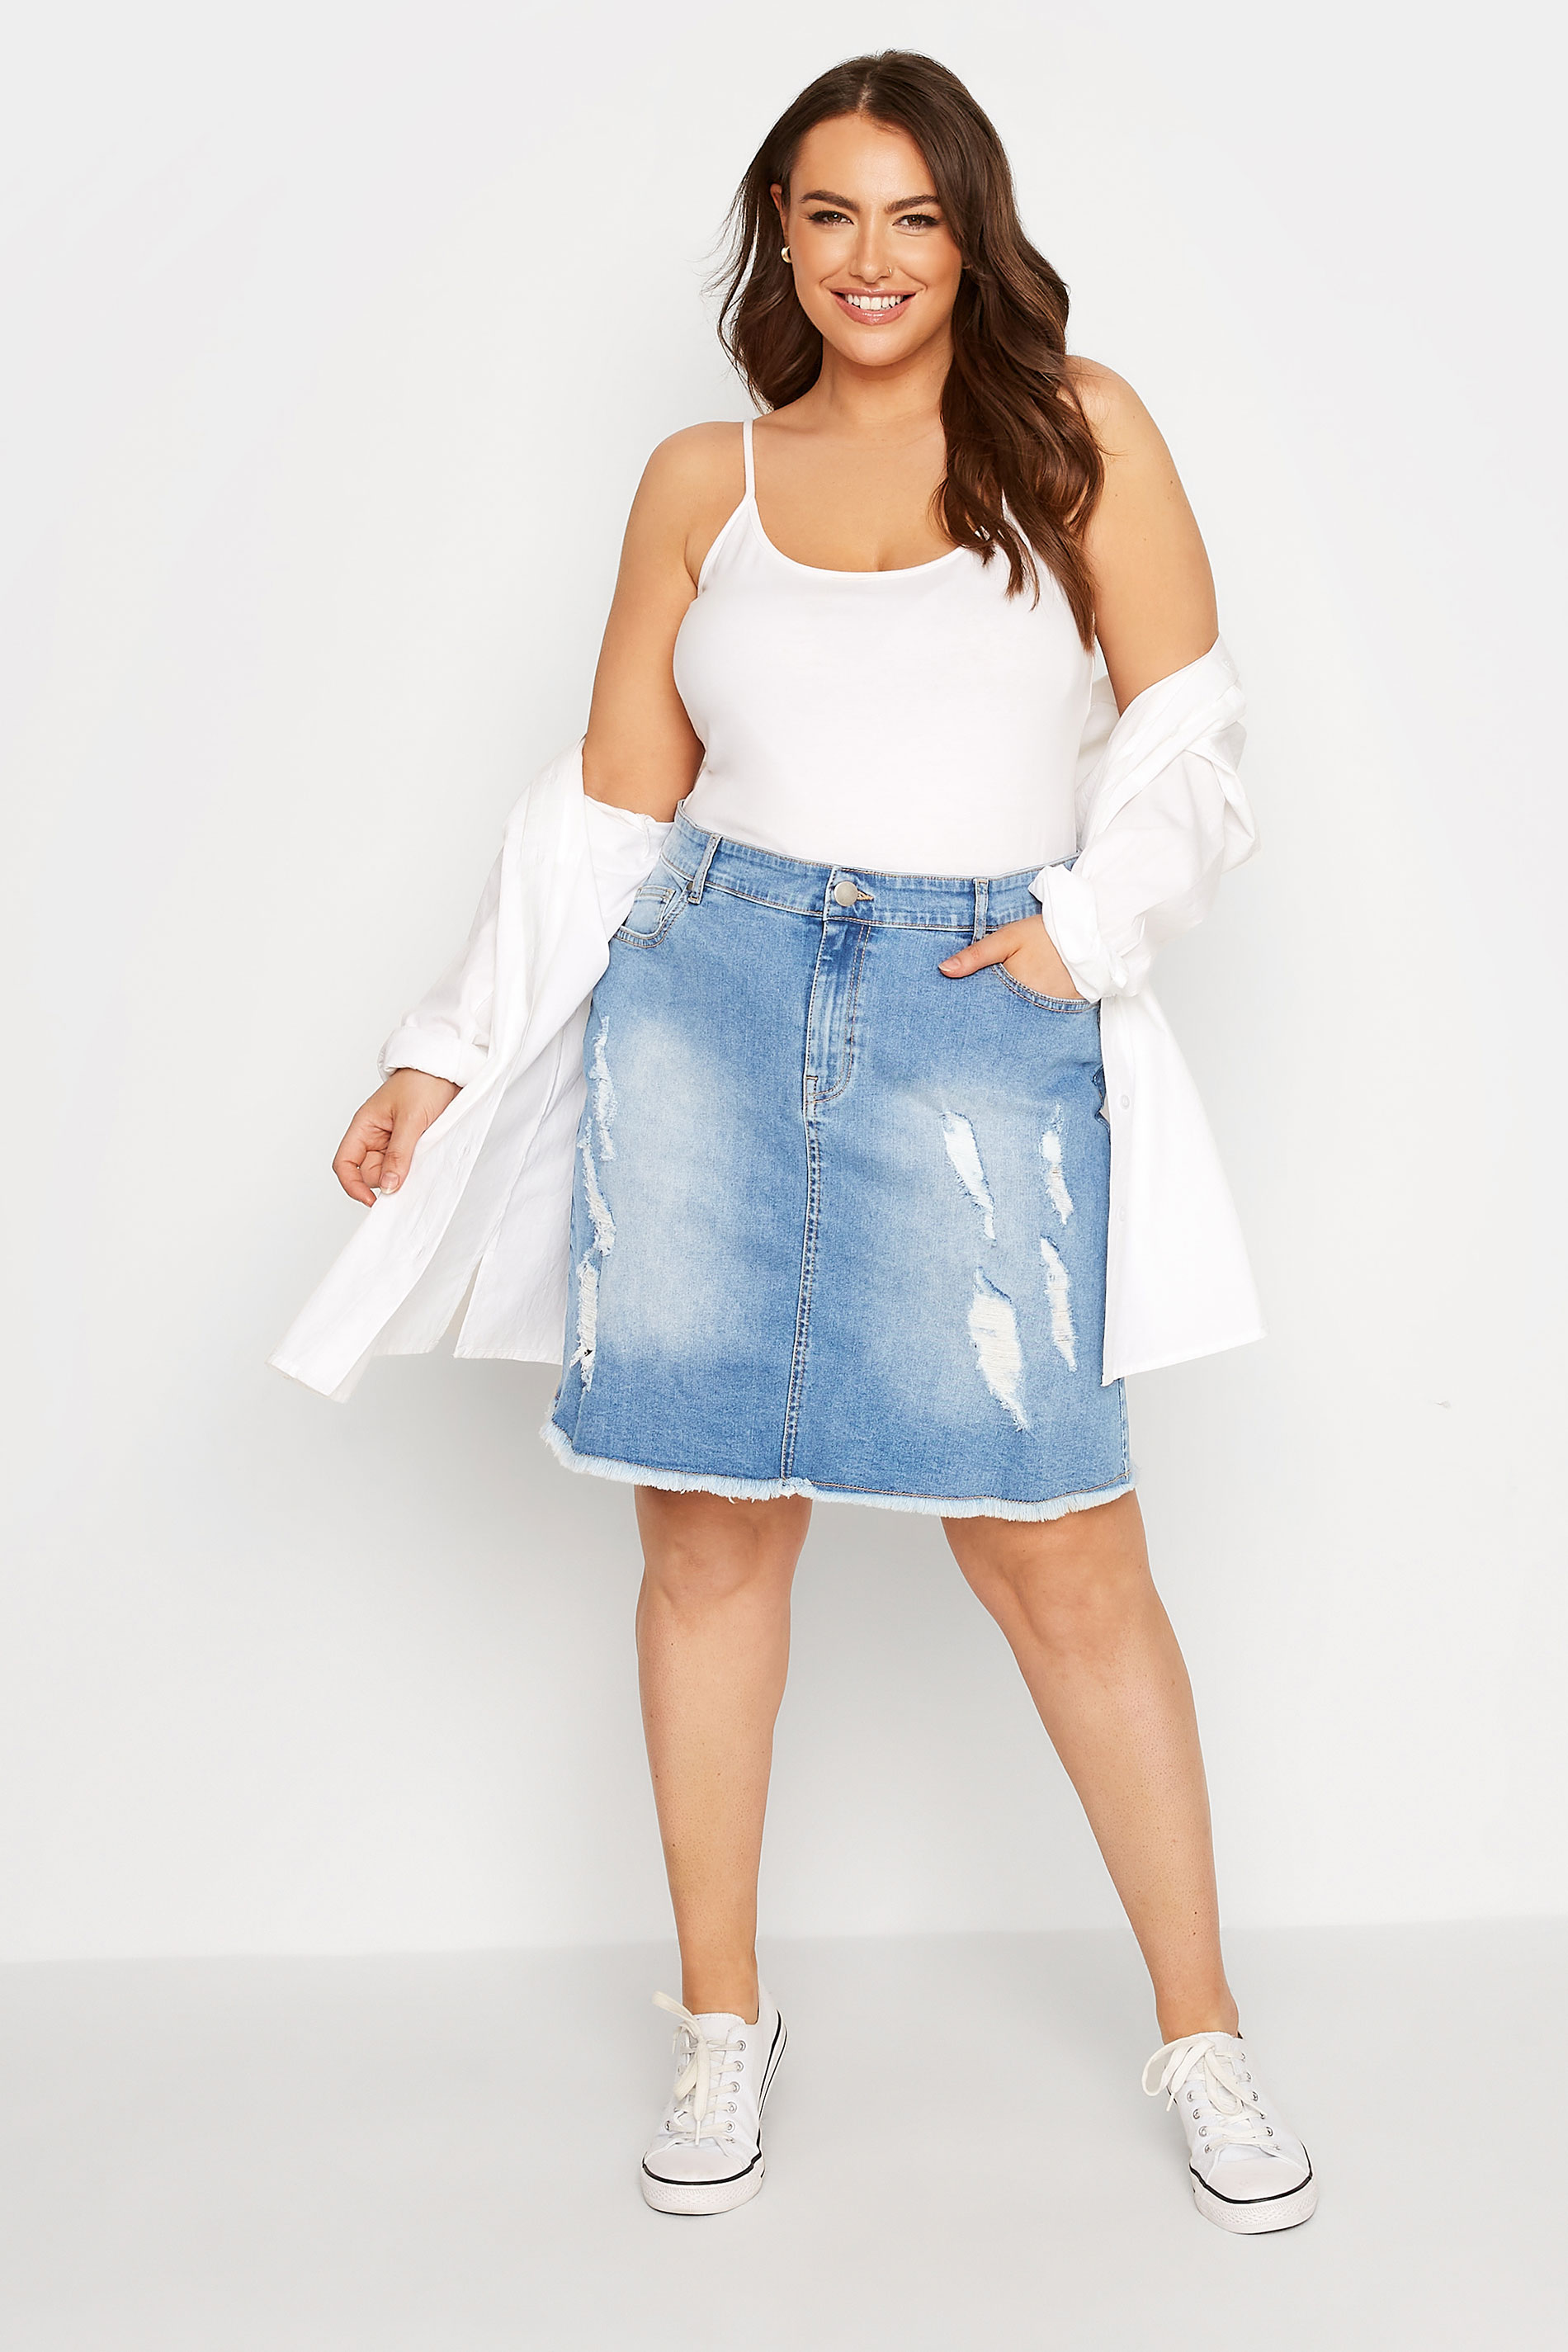 JNGSA Women's Mini Denim Skirts Short Jean Skirt High Waist Irregular  Slimming Denim Culottes With Shorts Skirt Summer Trendy Light Blue -  Walmart.com